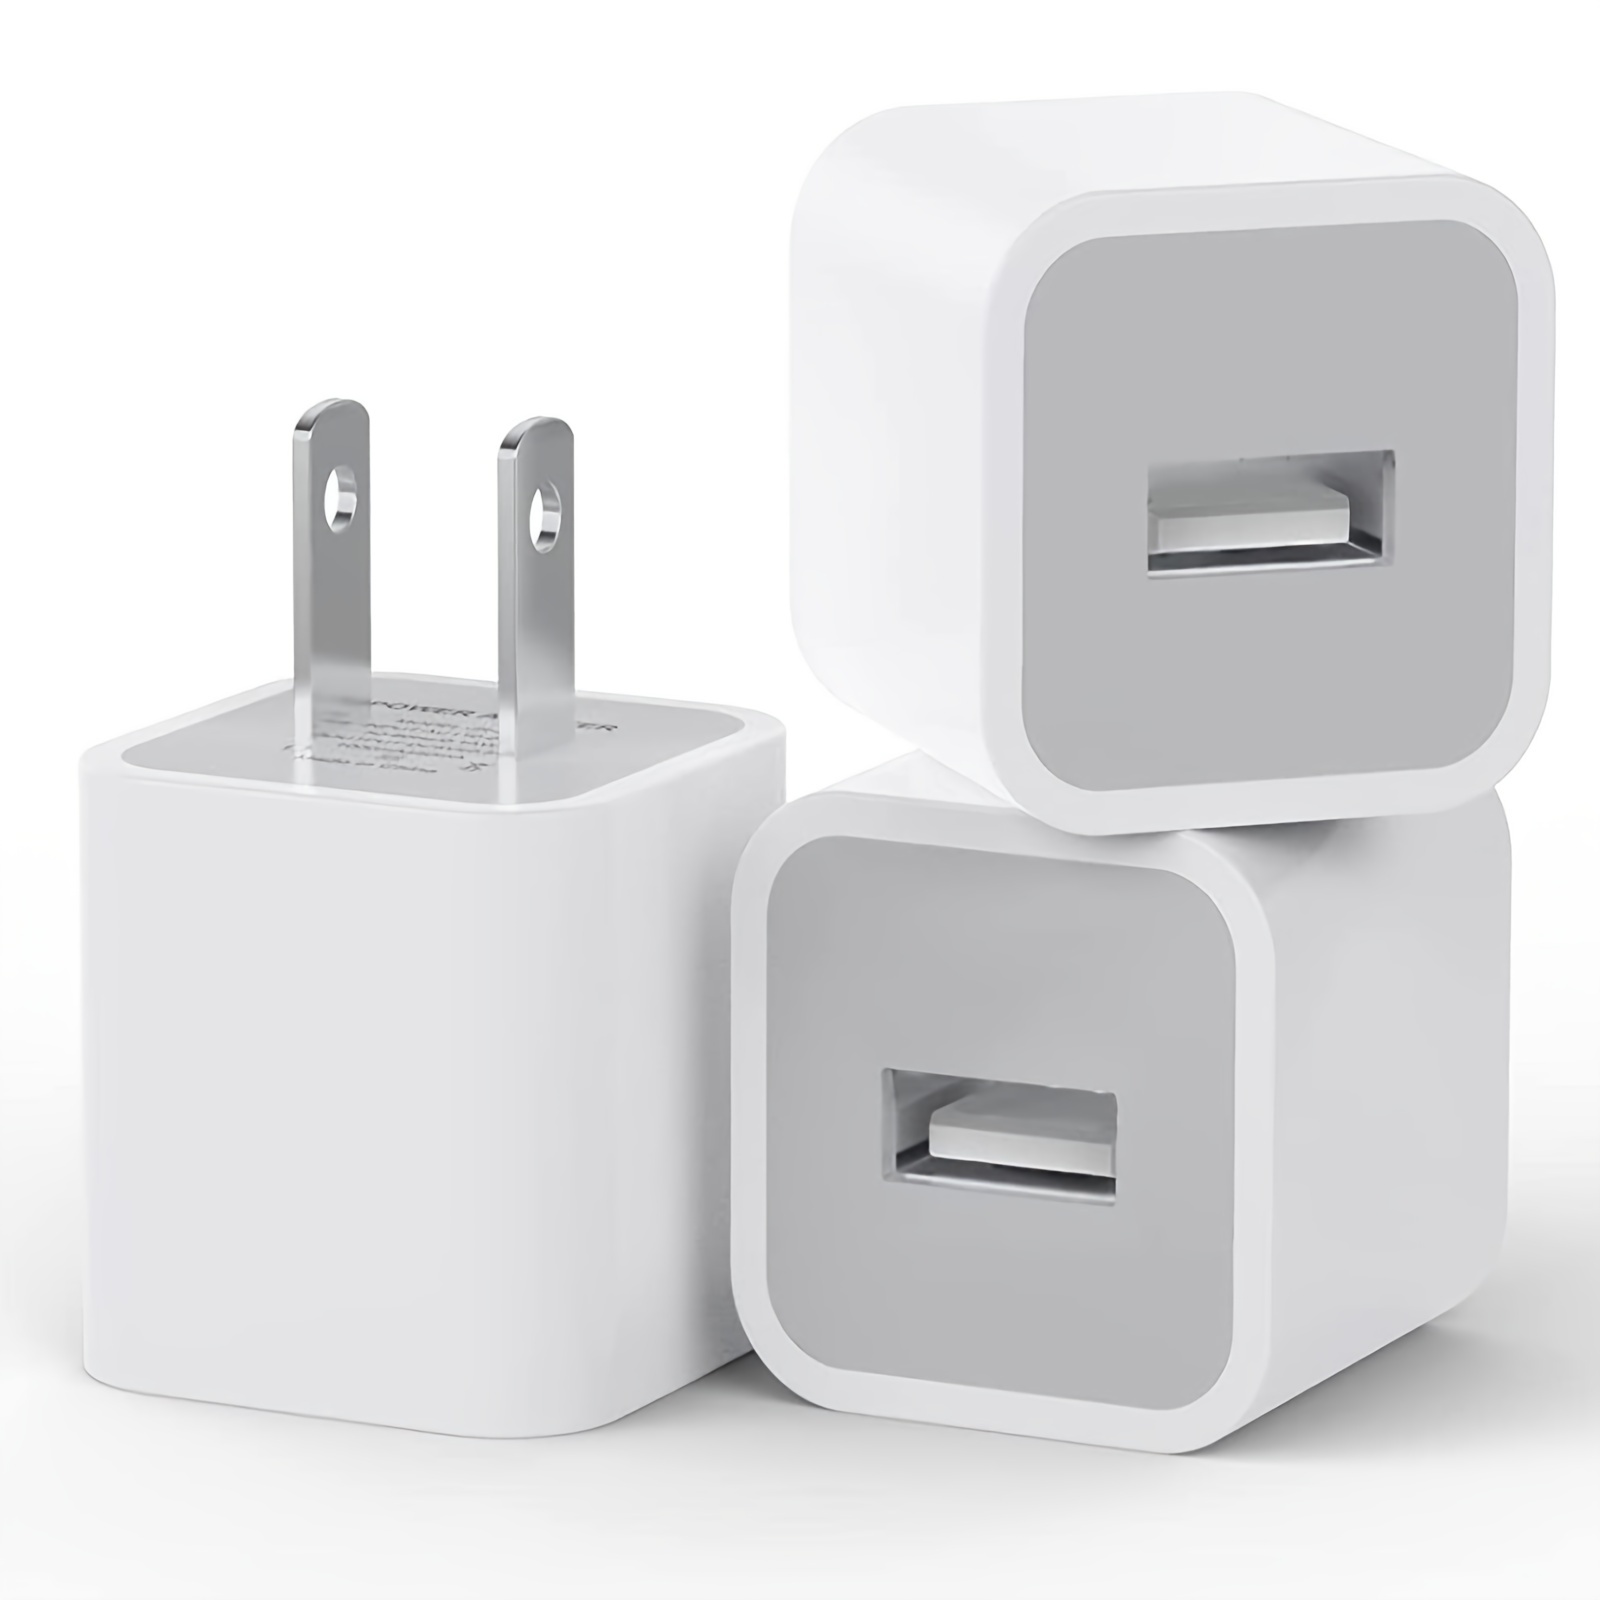 Paquete de 2 bloques de carga para iPhone 15 [certificado Apple MFi]  Cargador de pared USB C tipo C, adaptador de corriente compatible con  iPhone